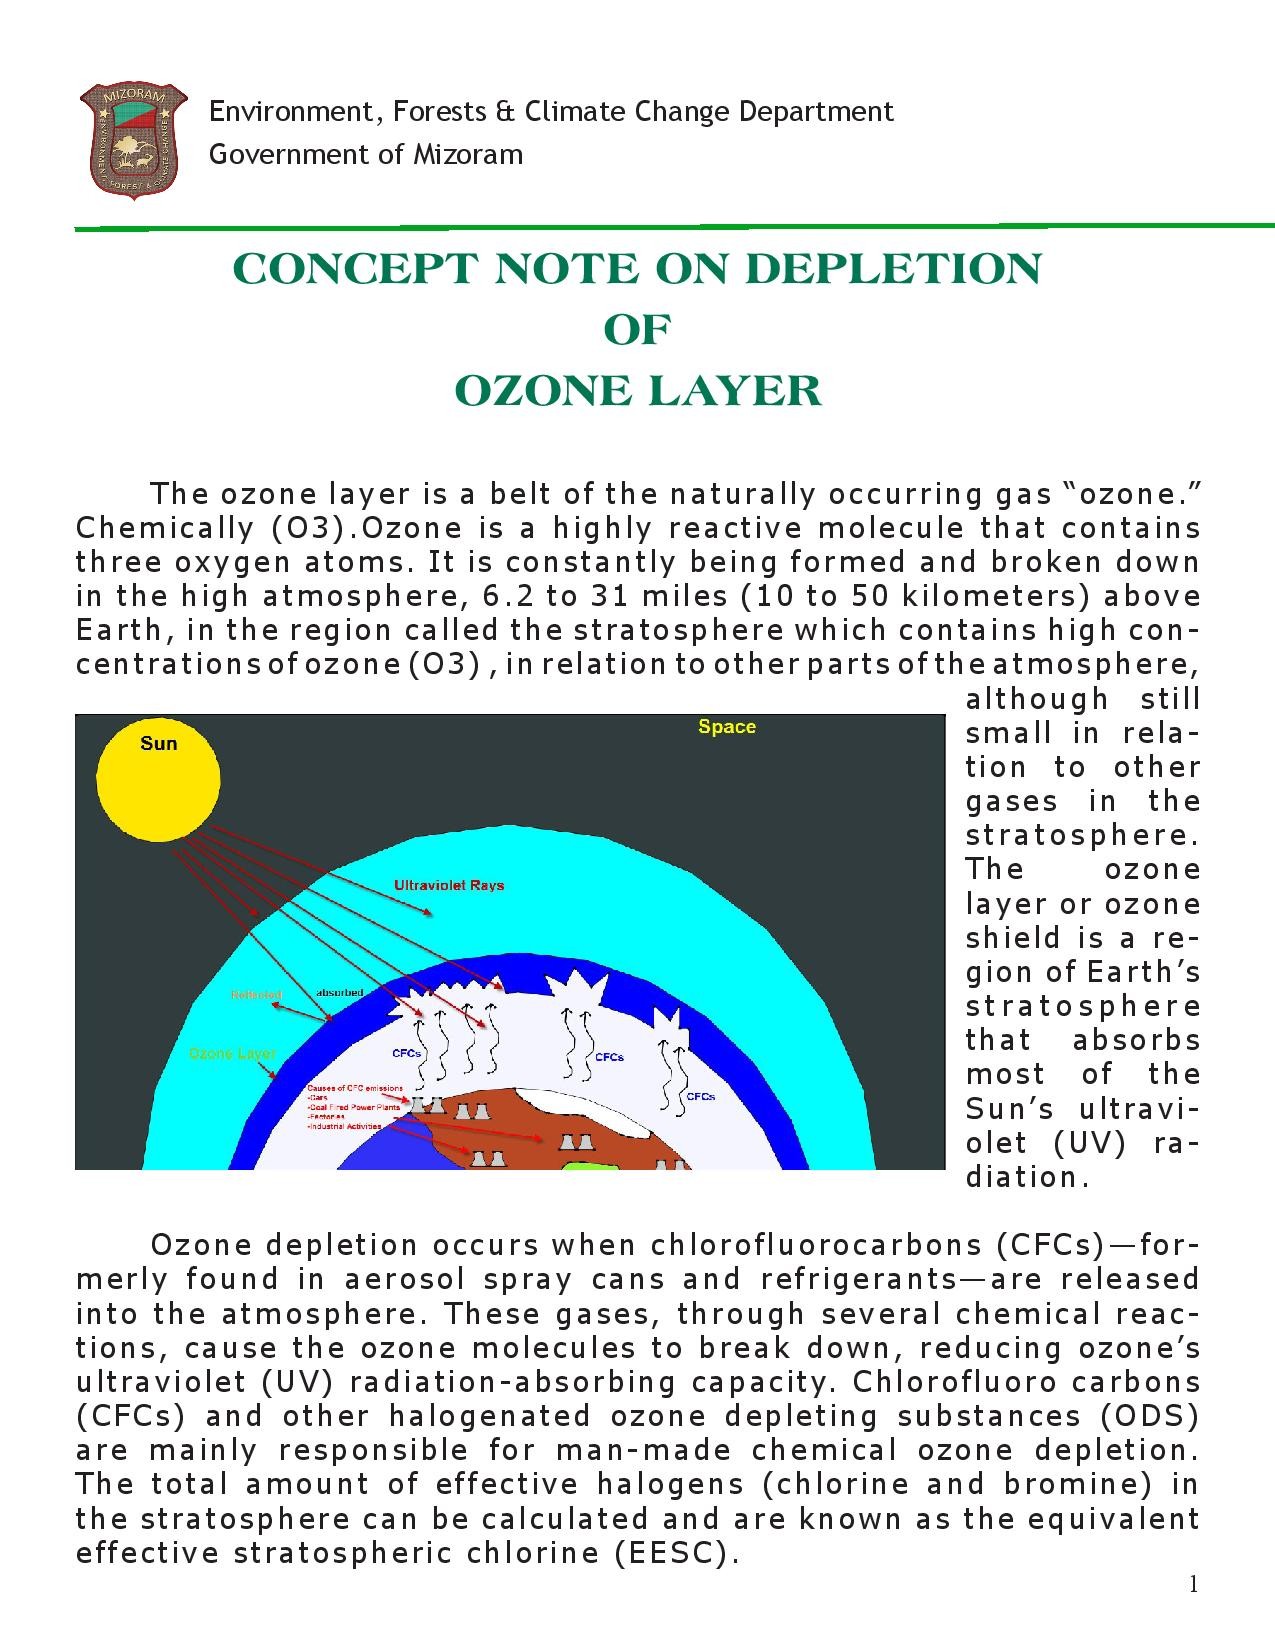 short case study on ozone layer depletion